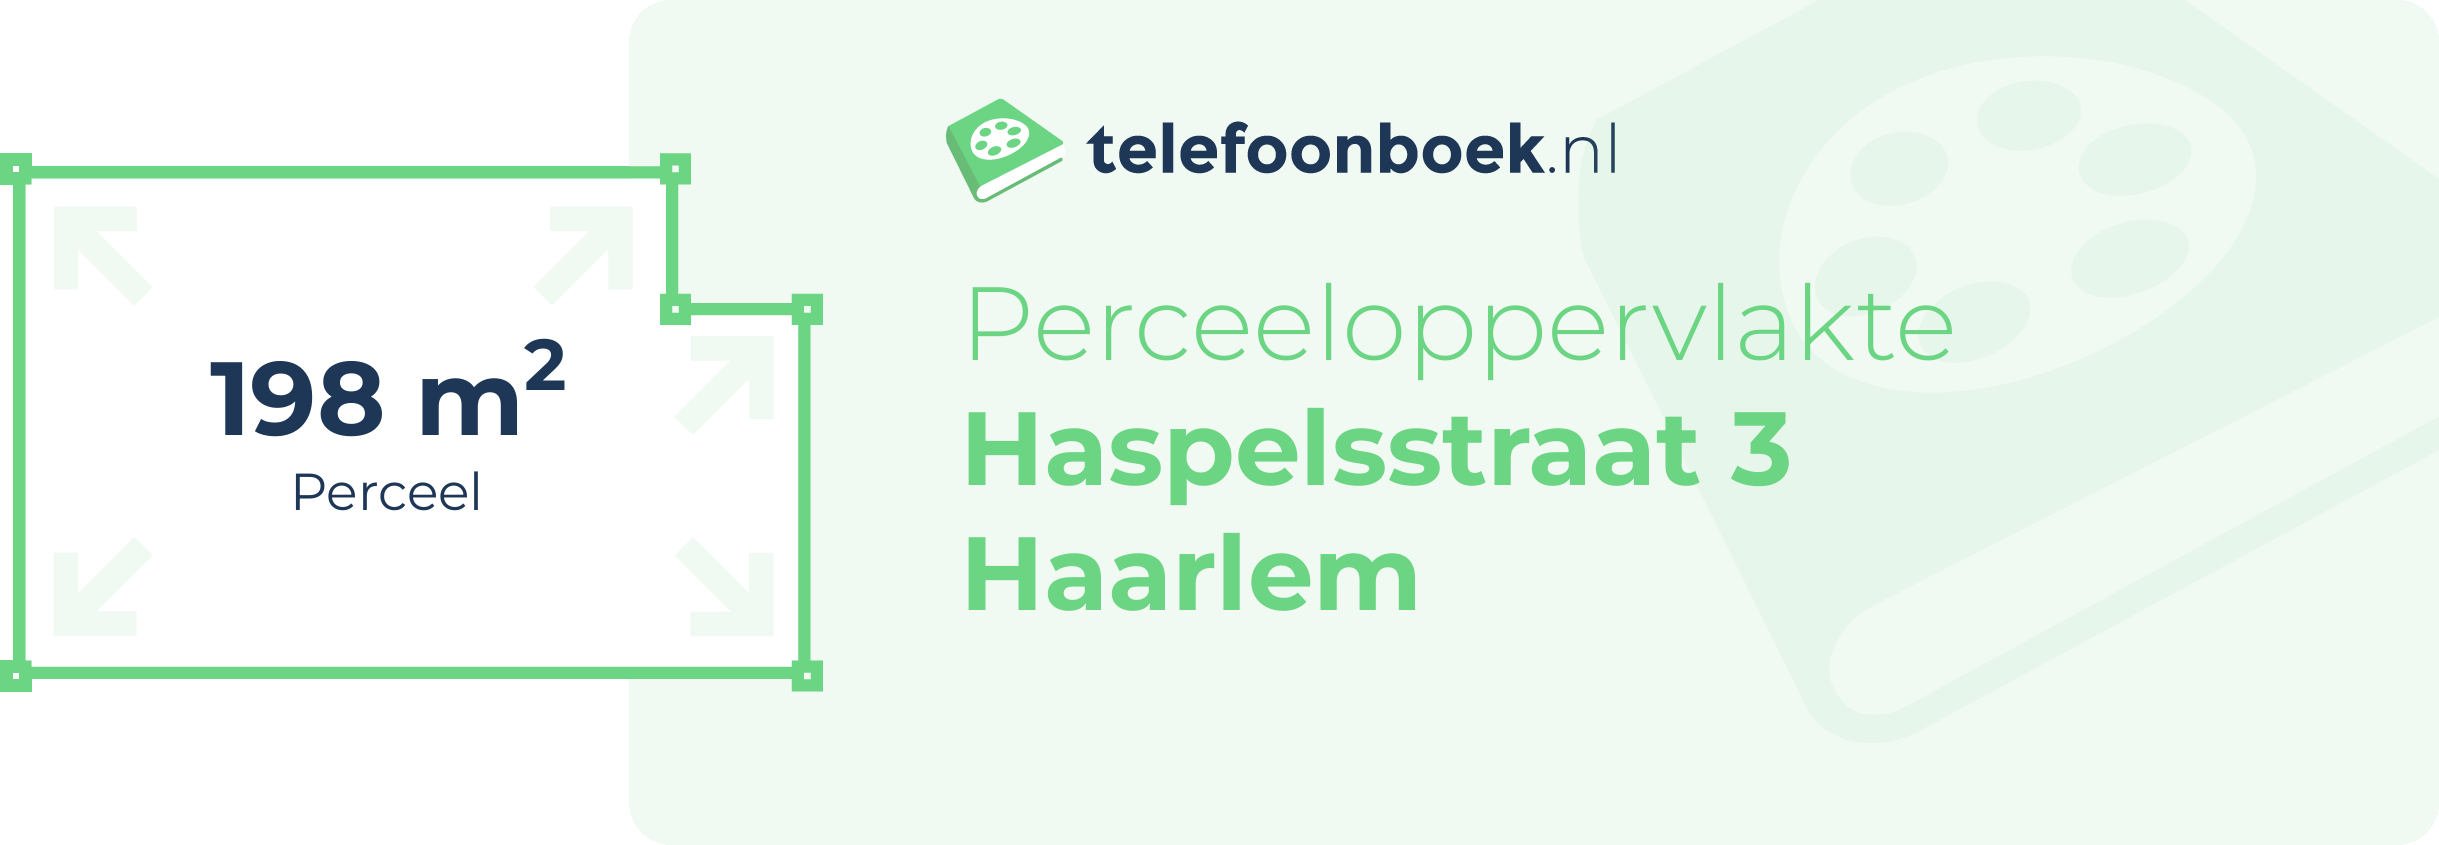 Perceeloppervlakte Haspelsstraat 3 Haarlem